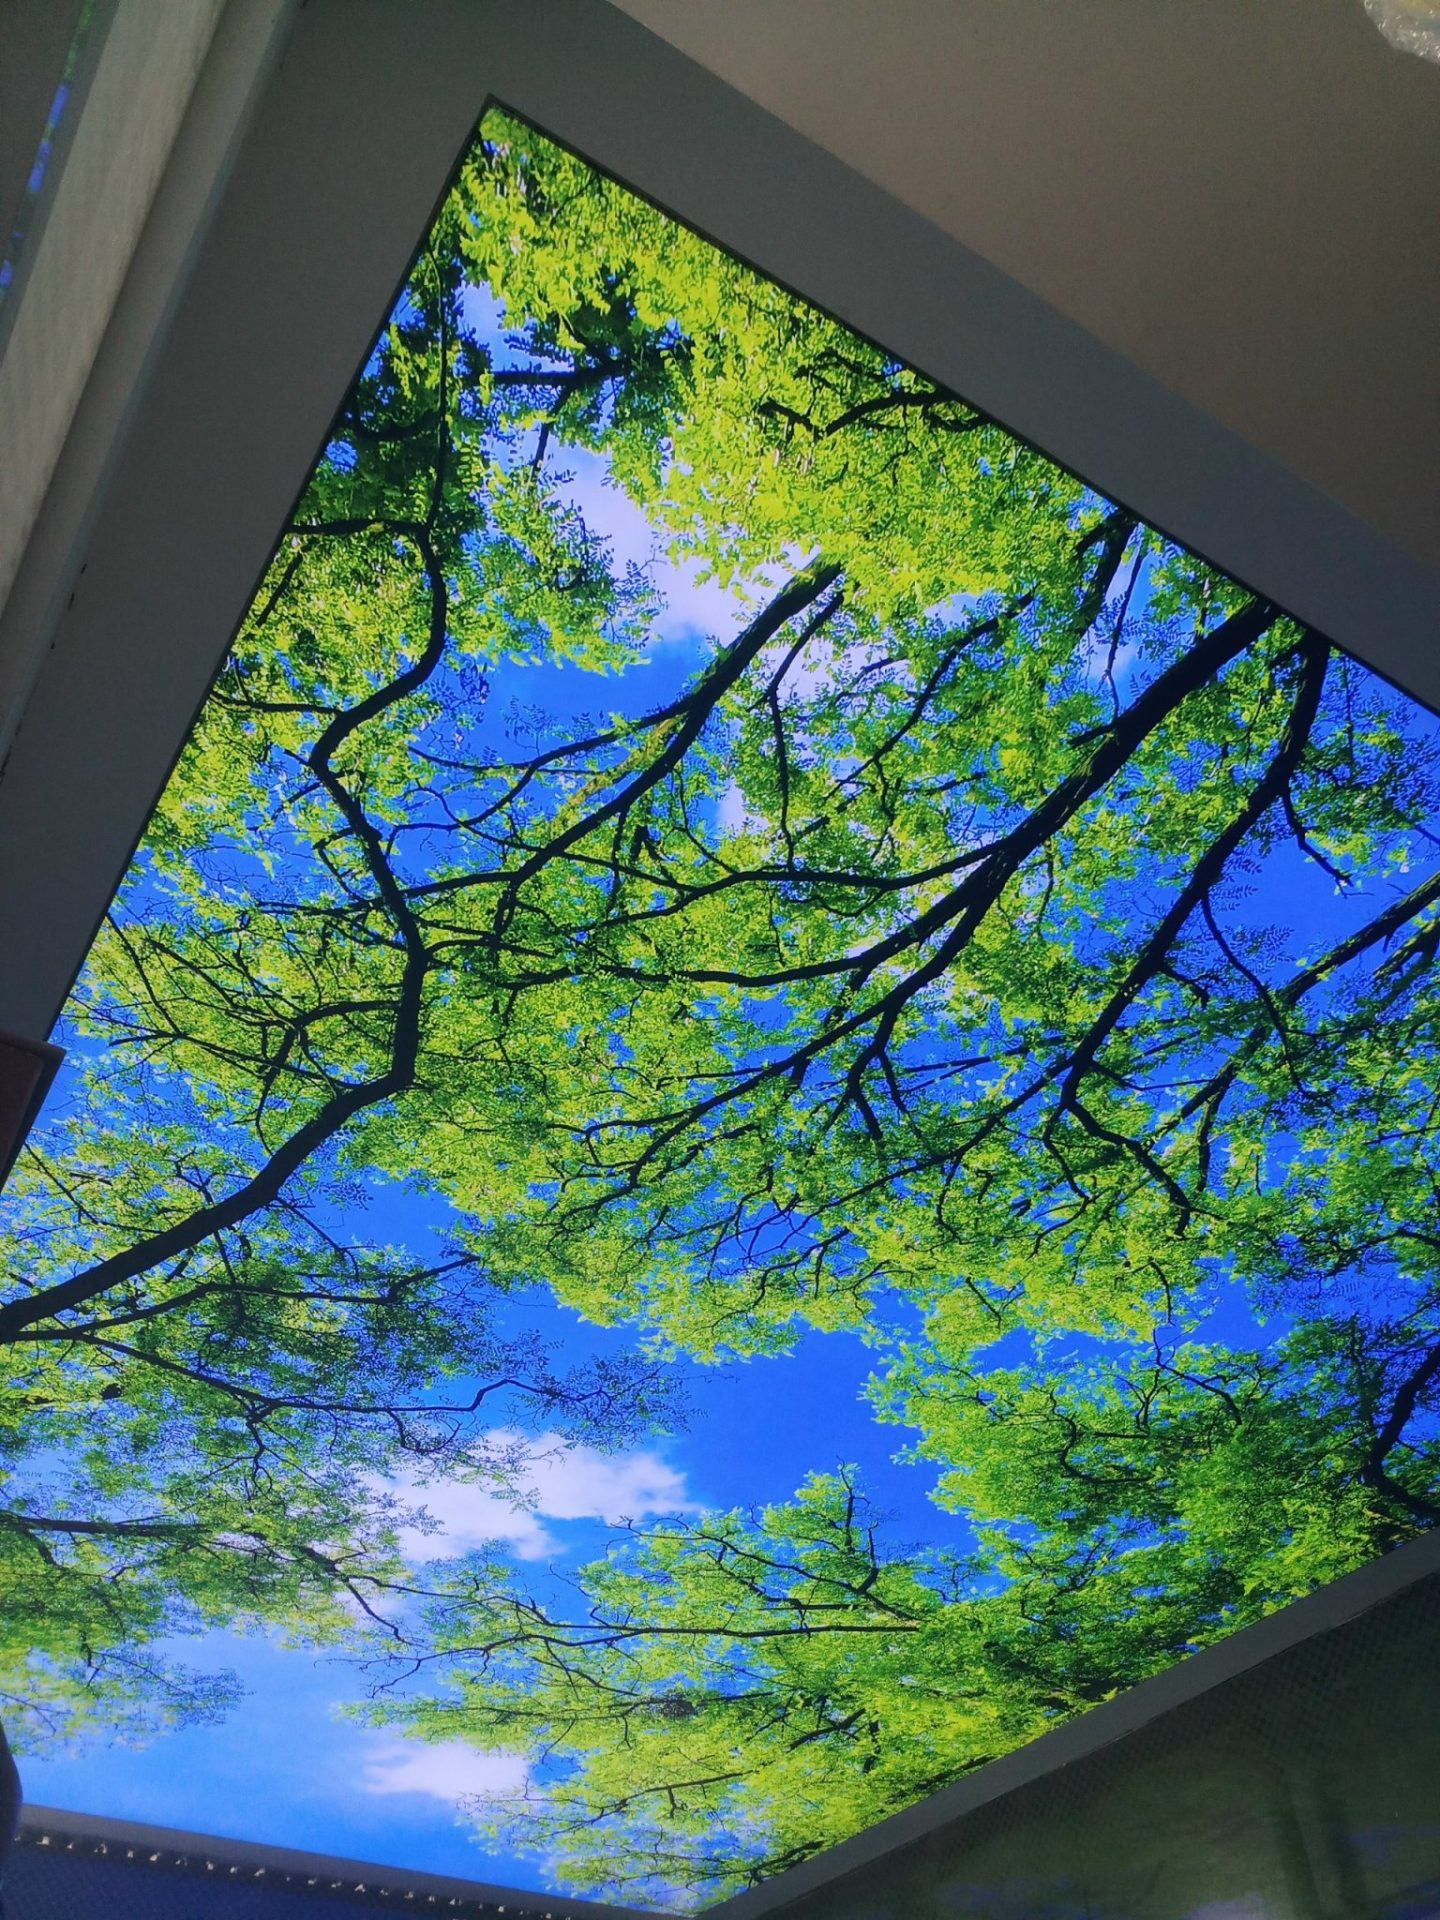 mẫu trần xuyên sáng 3d bầu trời xanh kết hợp cùng cây xanh